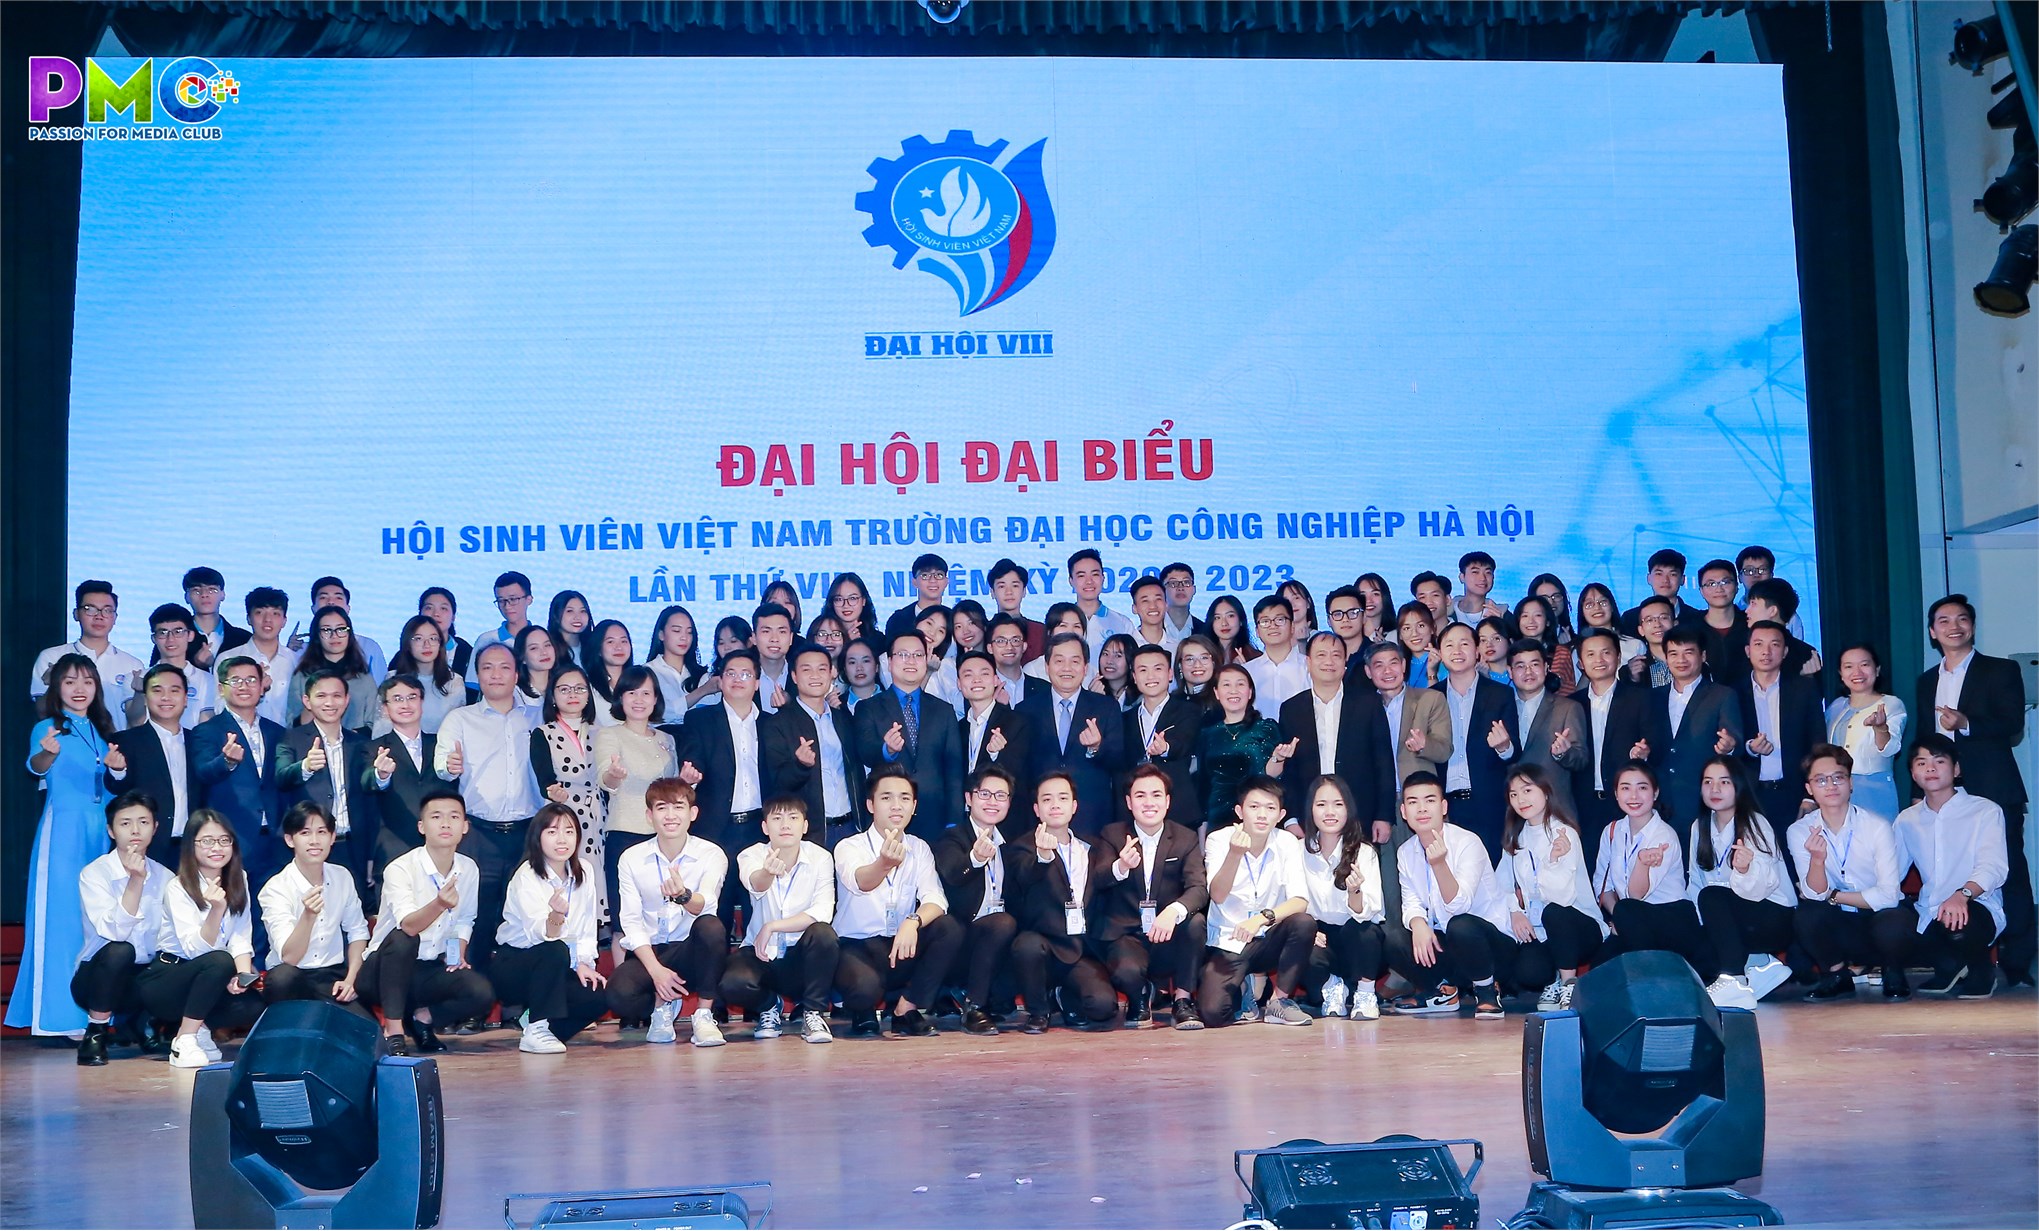 Đại hội Đại biểu Hội Sinh viên Đại học Công nghiệp Hà Nội lần thứ VIII, nhiệm kỳ 2020 – 2023 thành công tốt đẹp